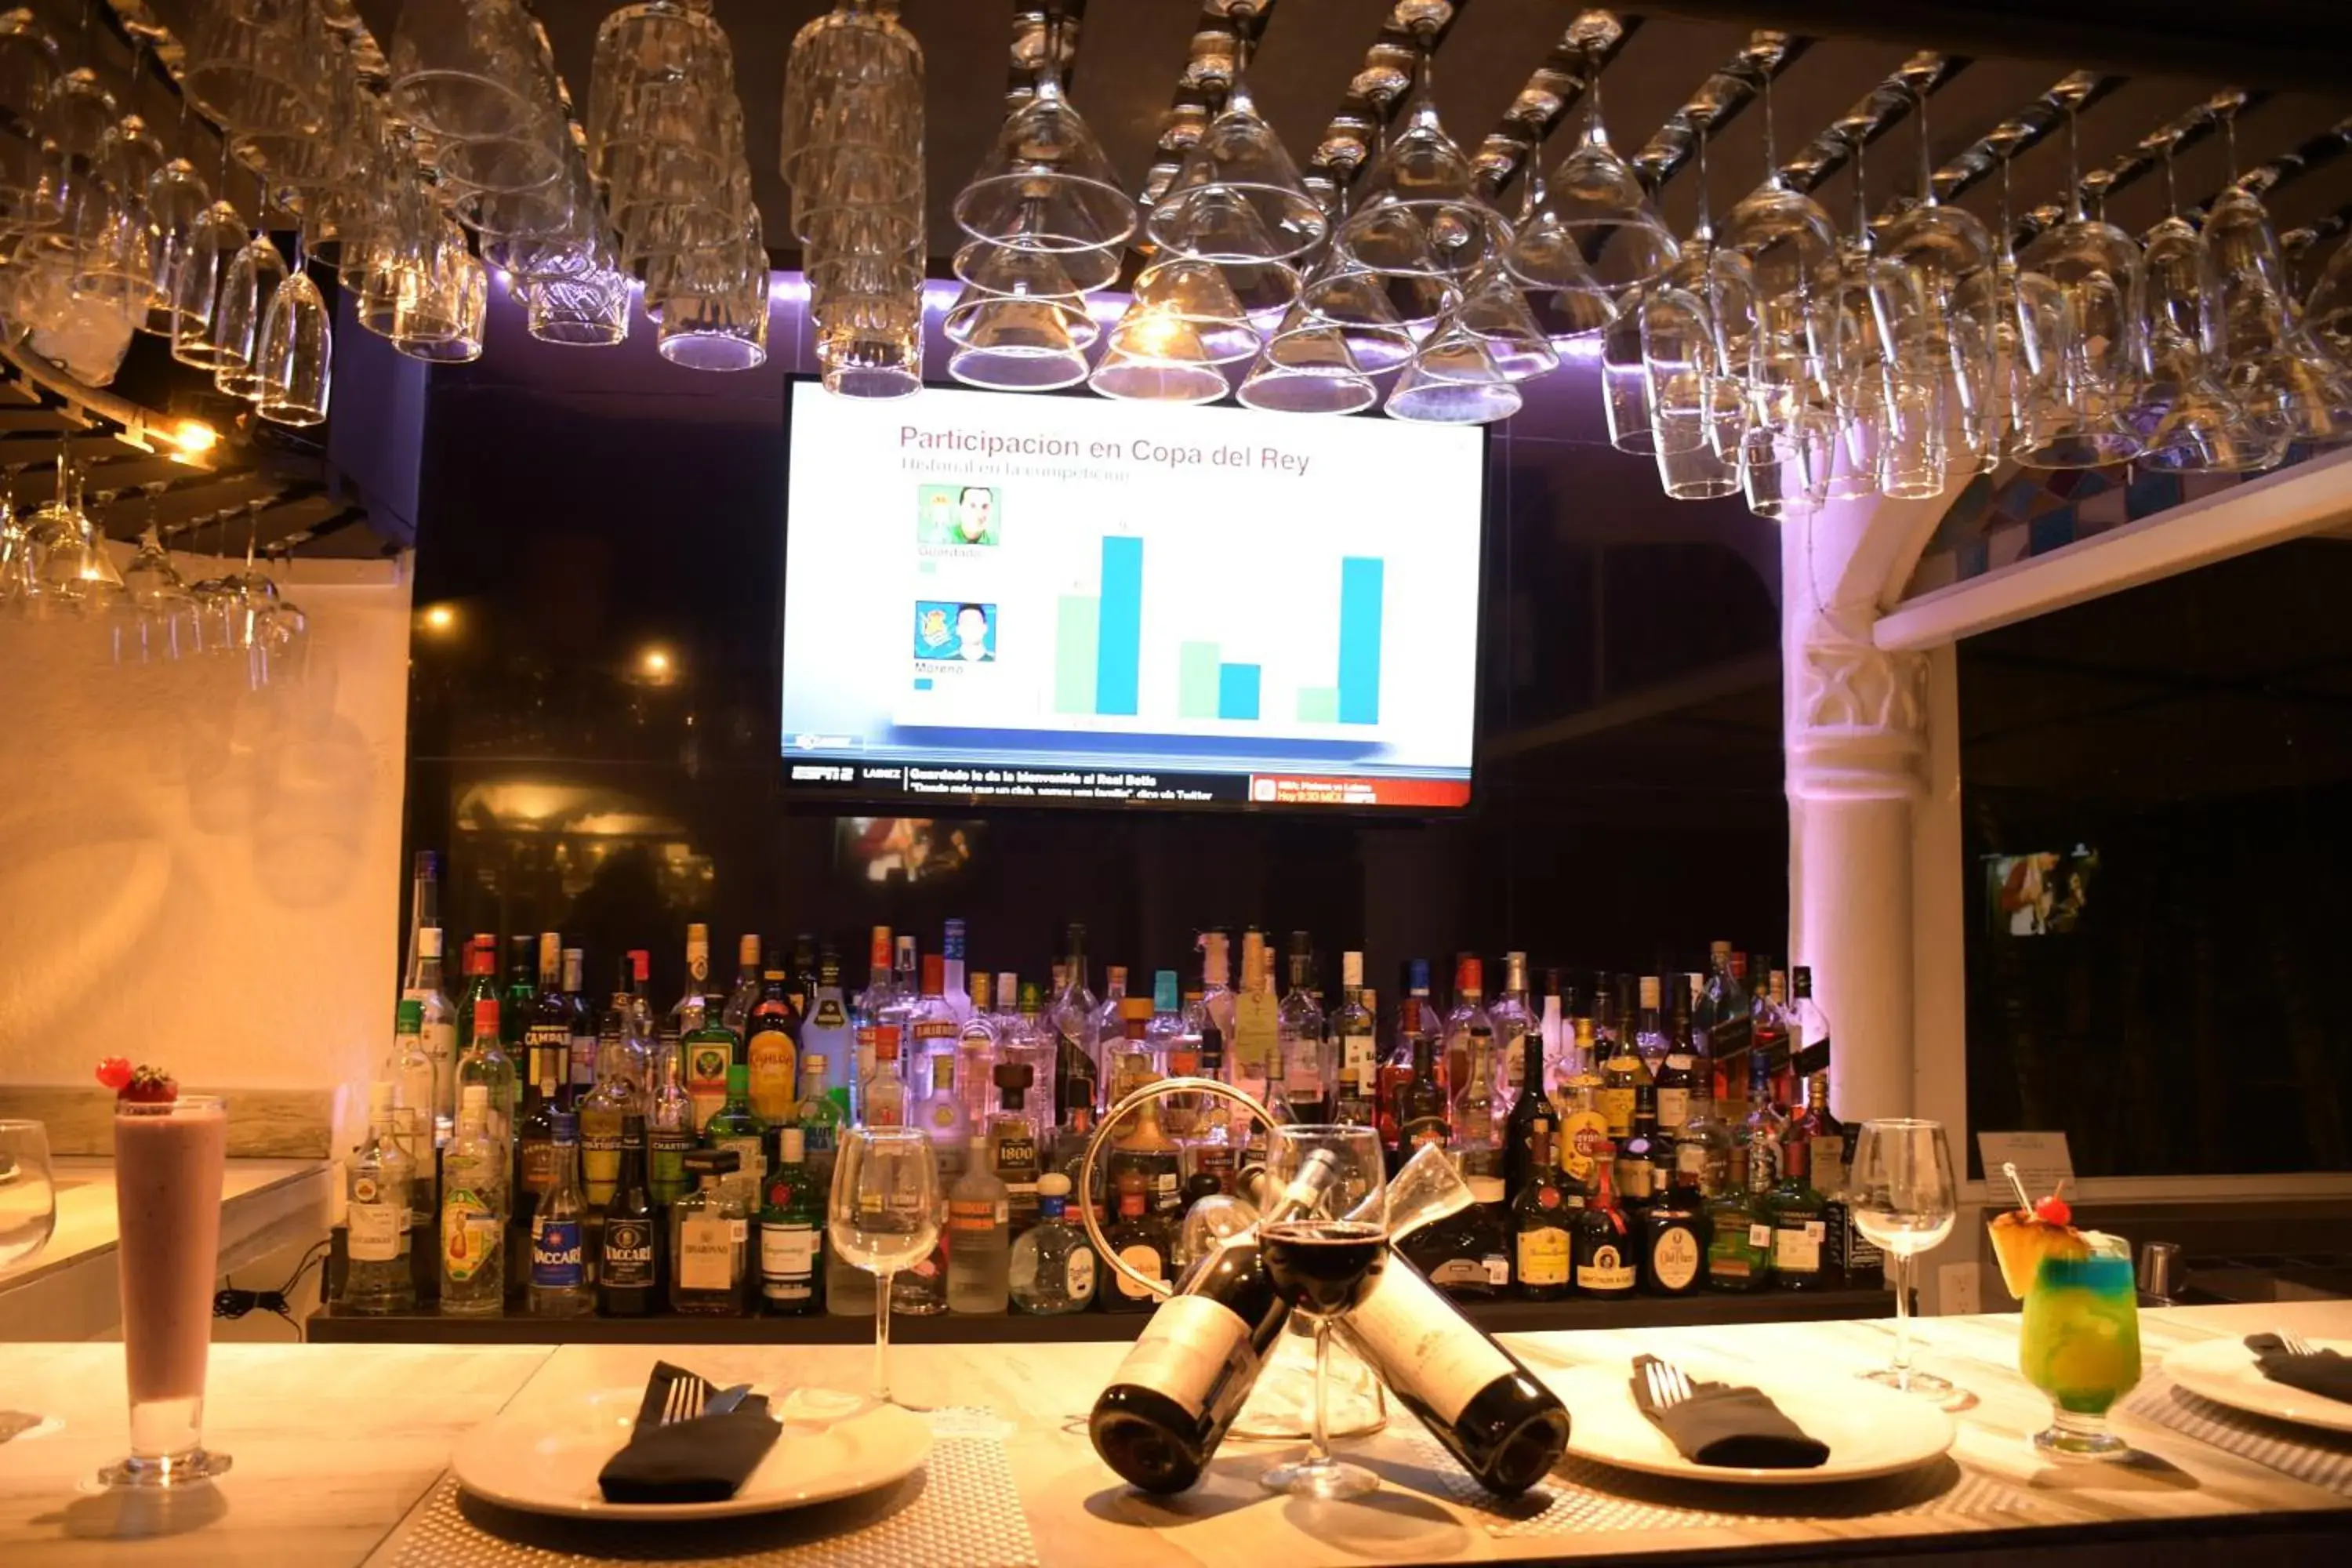 Lounge or bar, Banquet Facilities in Villa Bejar Cuernavaca